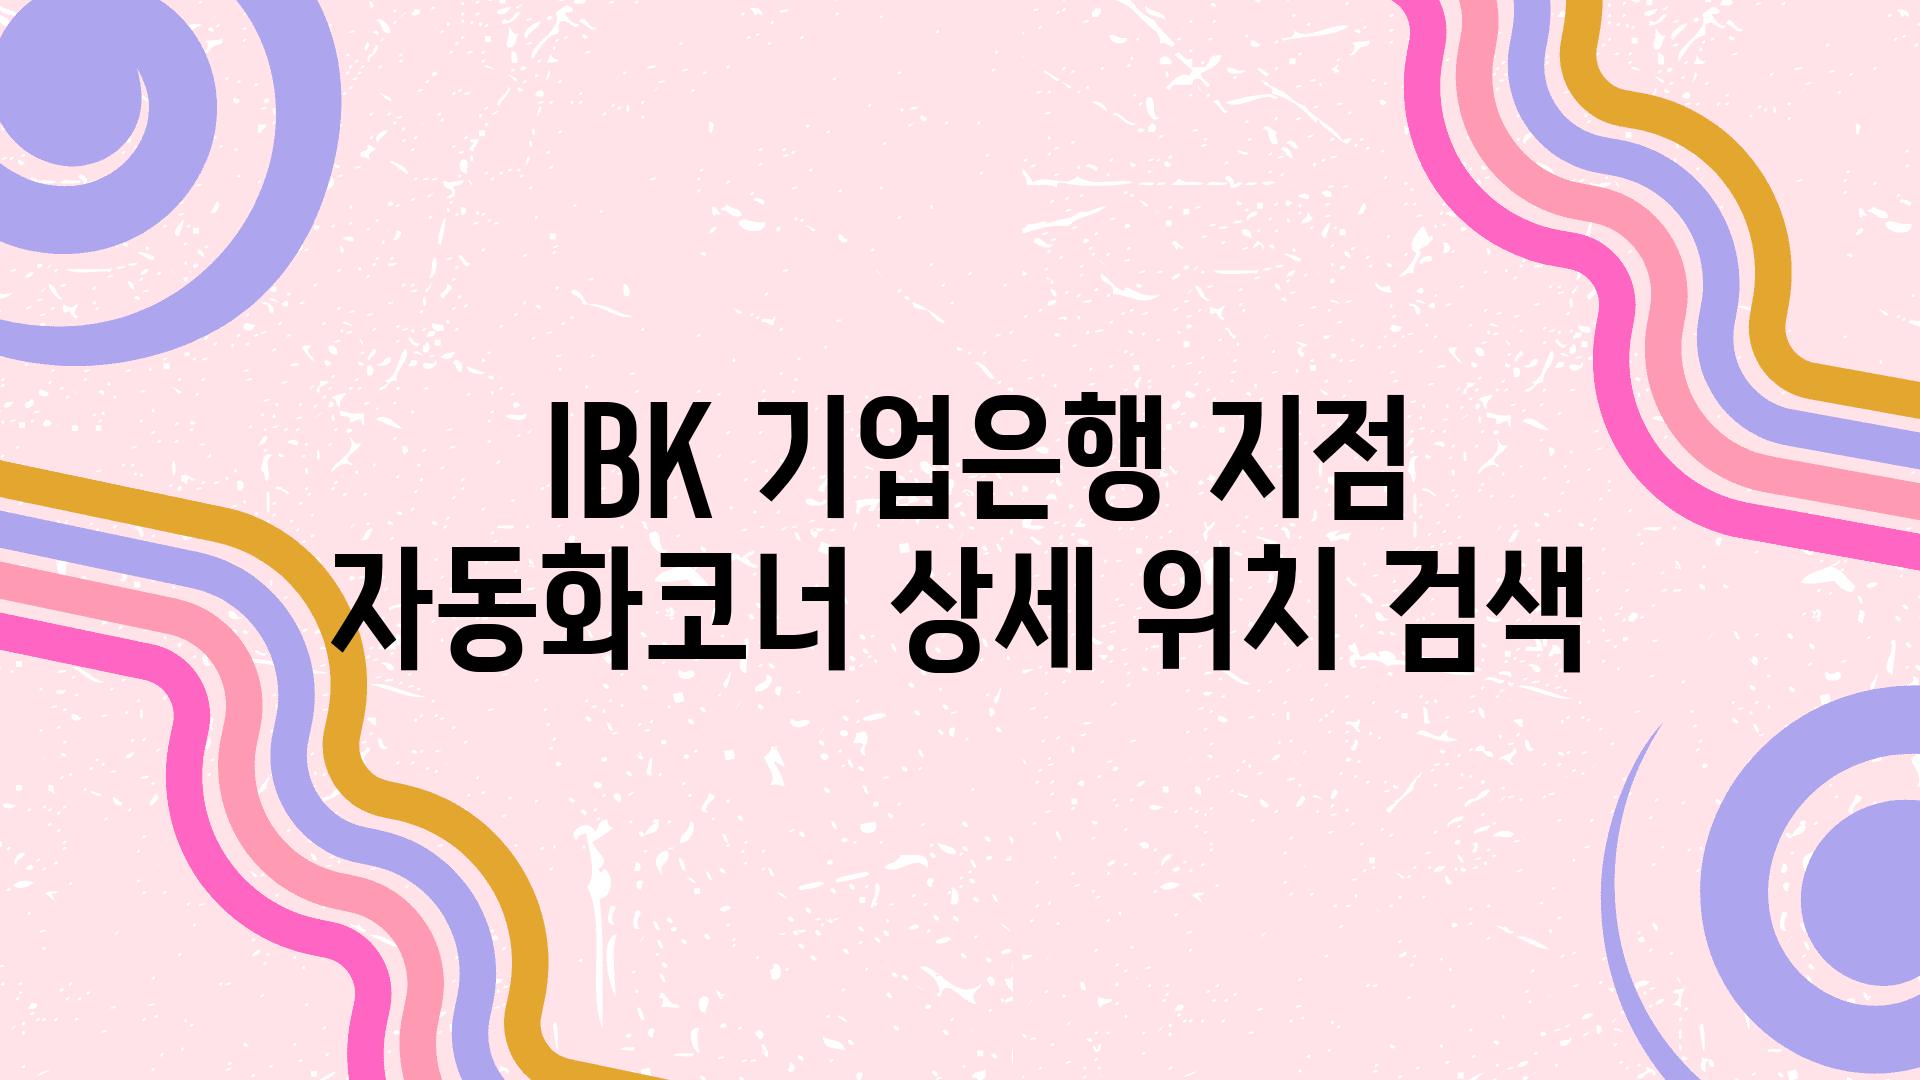  IBK 기업은행 지점  자동화코너 상세 위치 검색